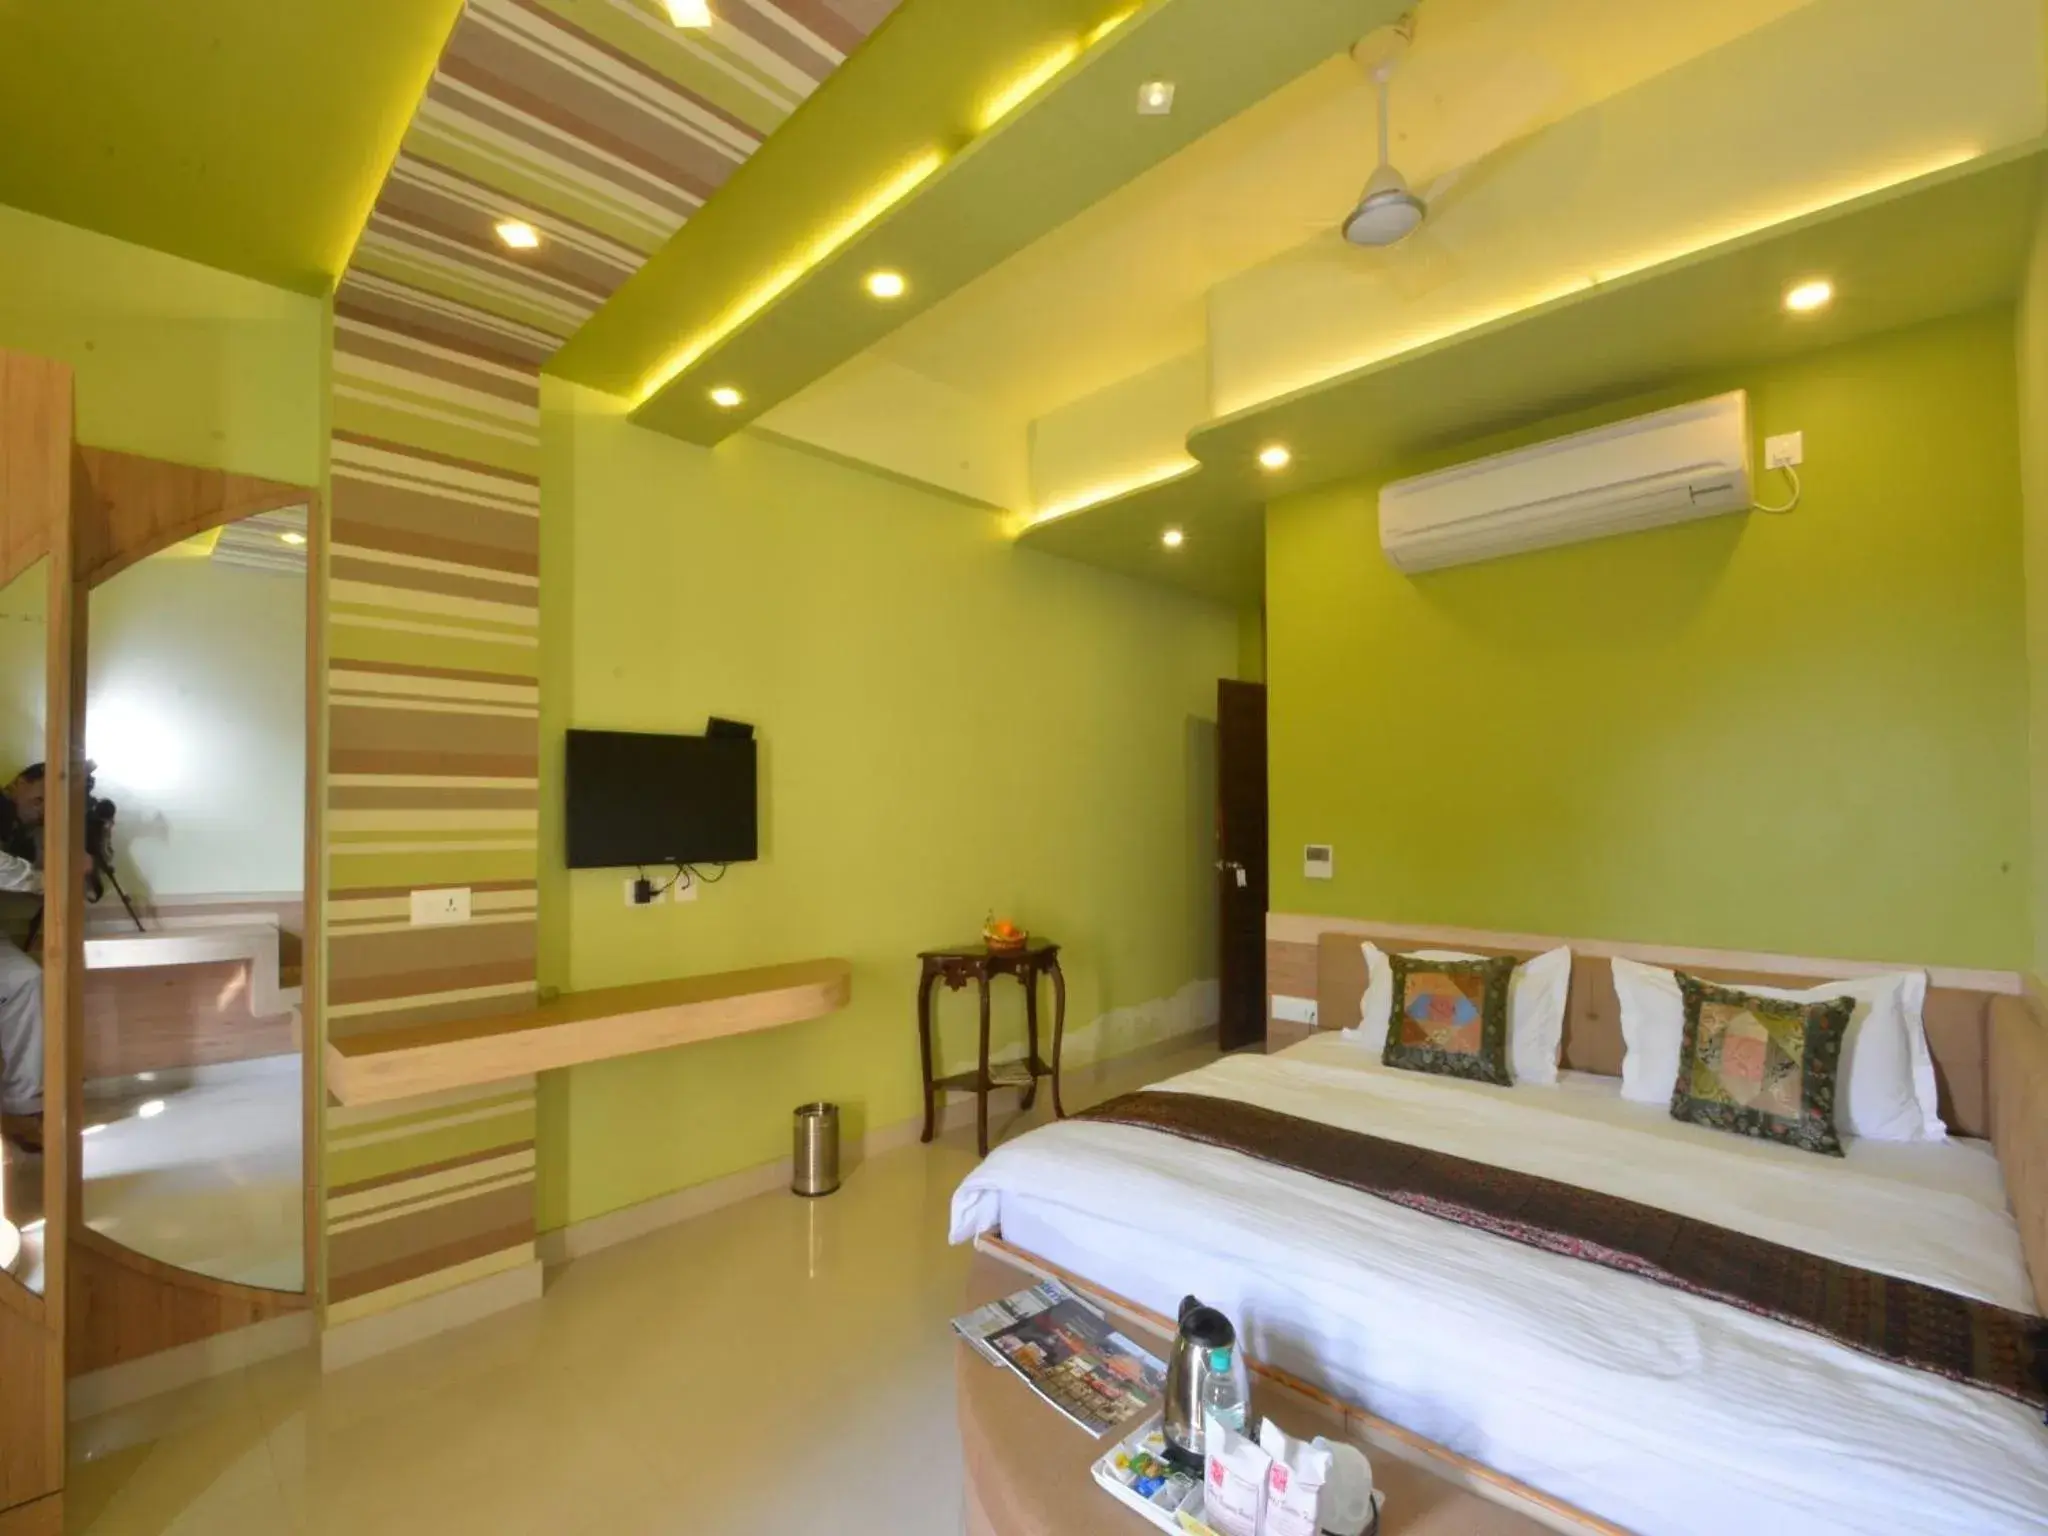 Bathroom in Hotel Banaras Haveli